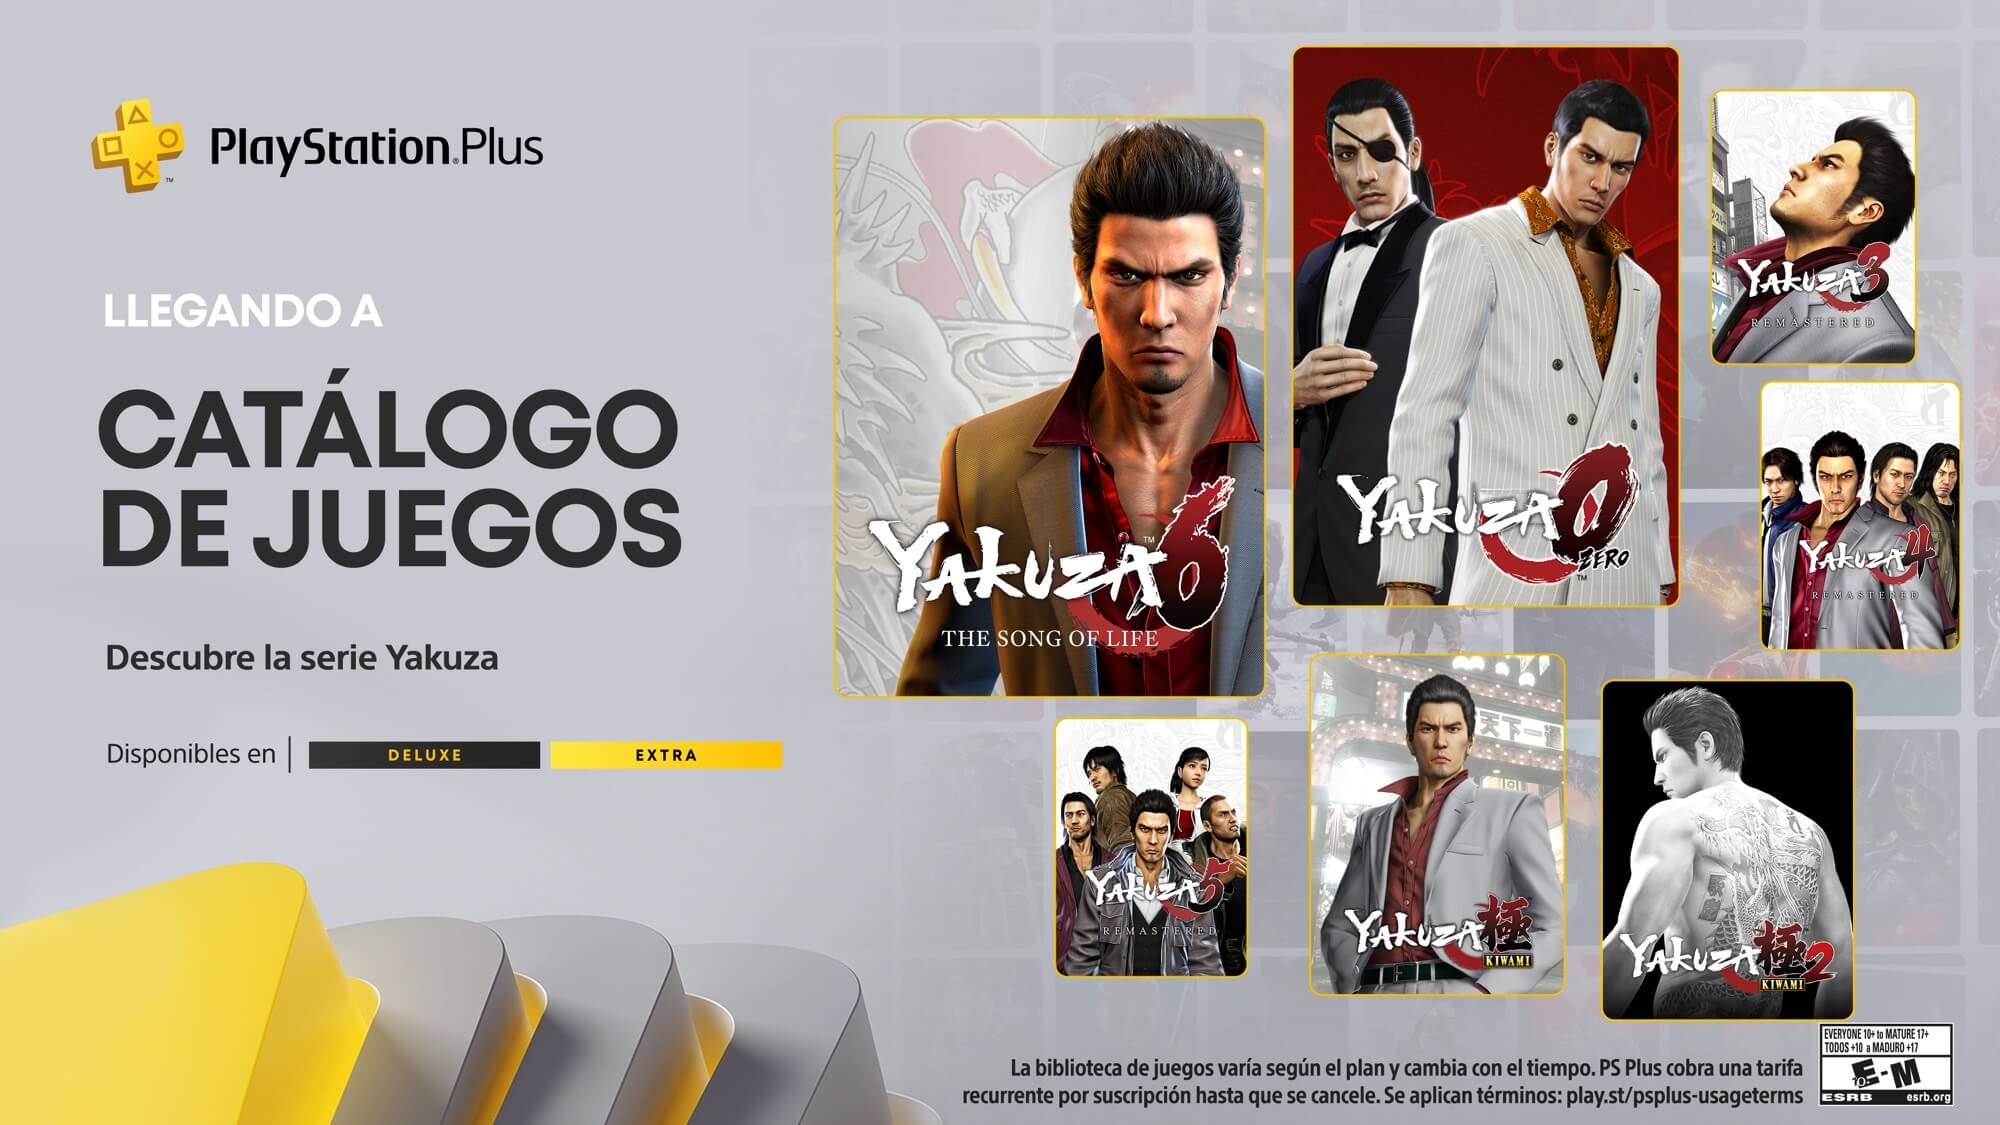 La saga Yakuza llegará completa a PS Plus antes de terminar el año